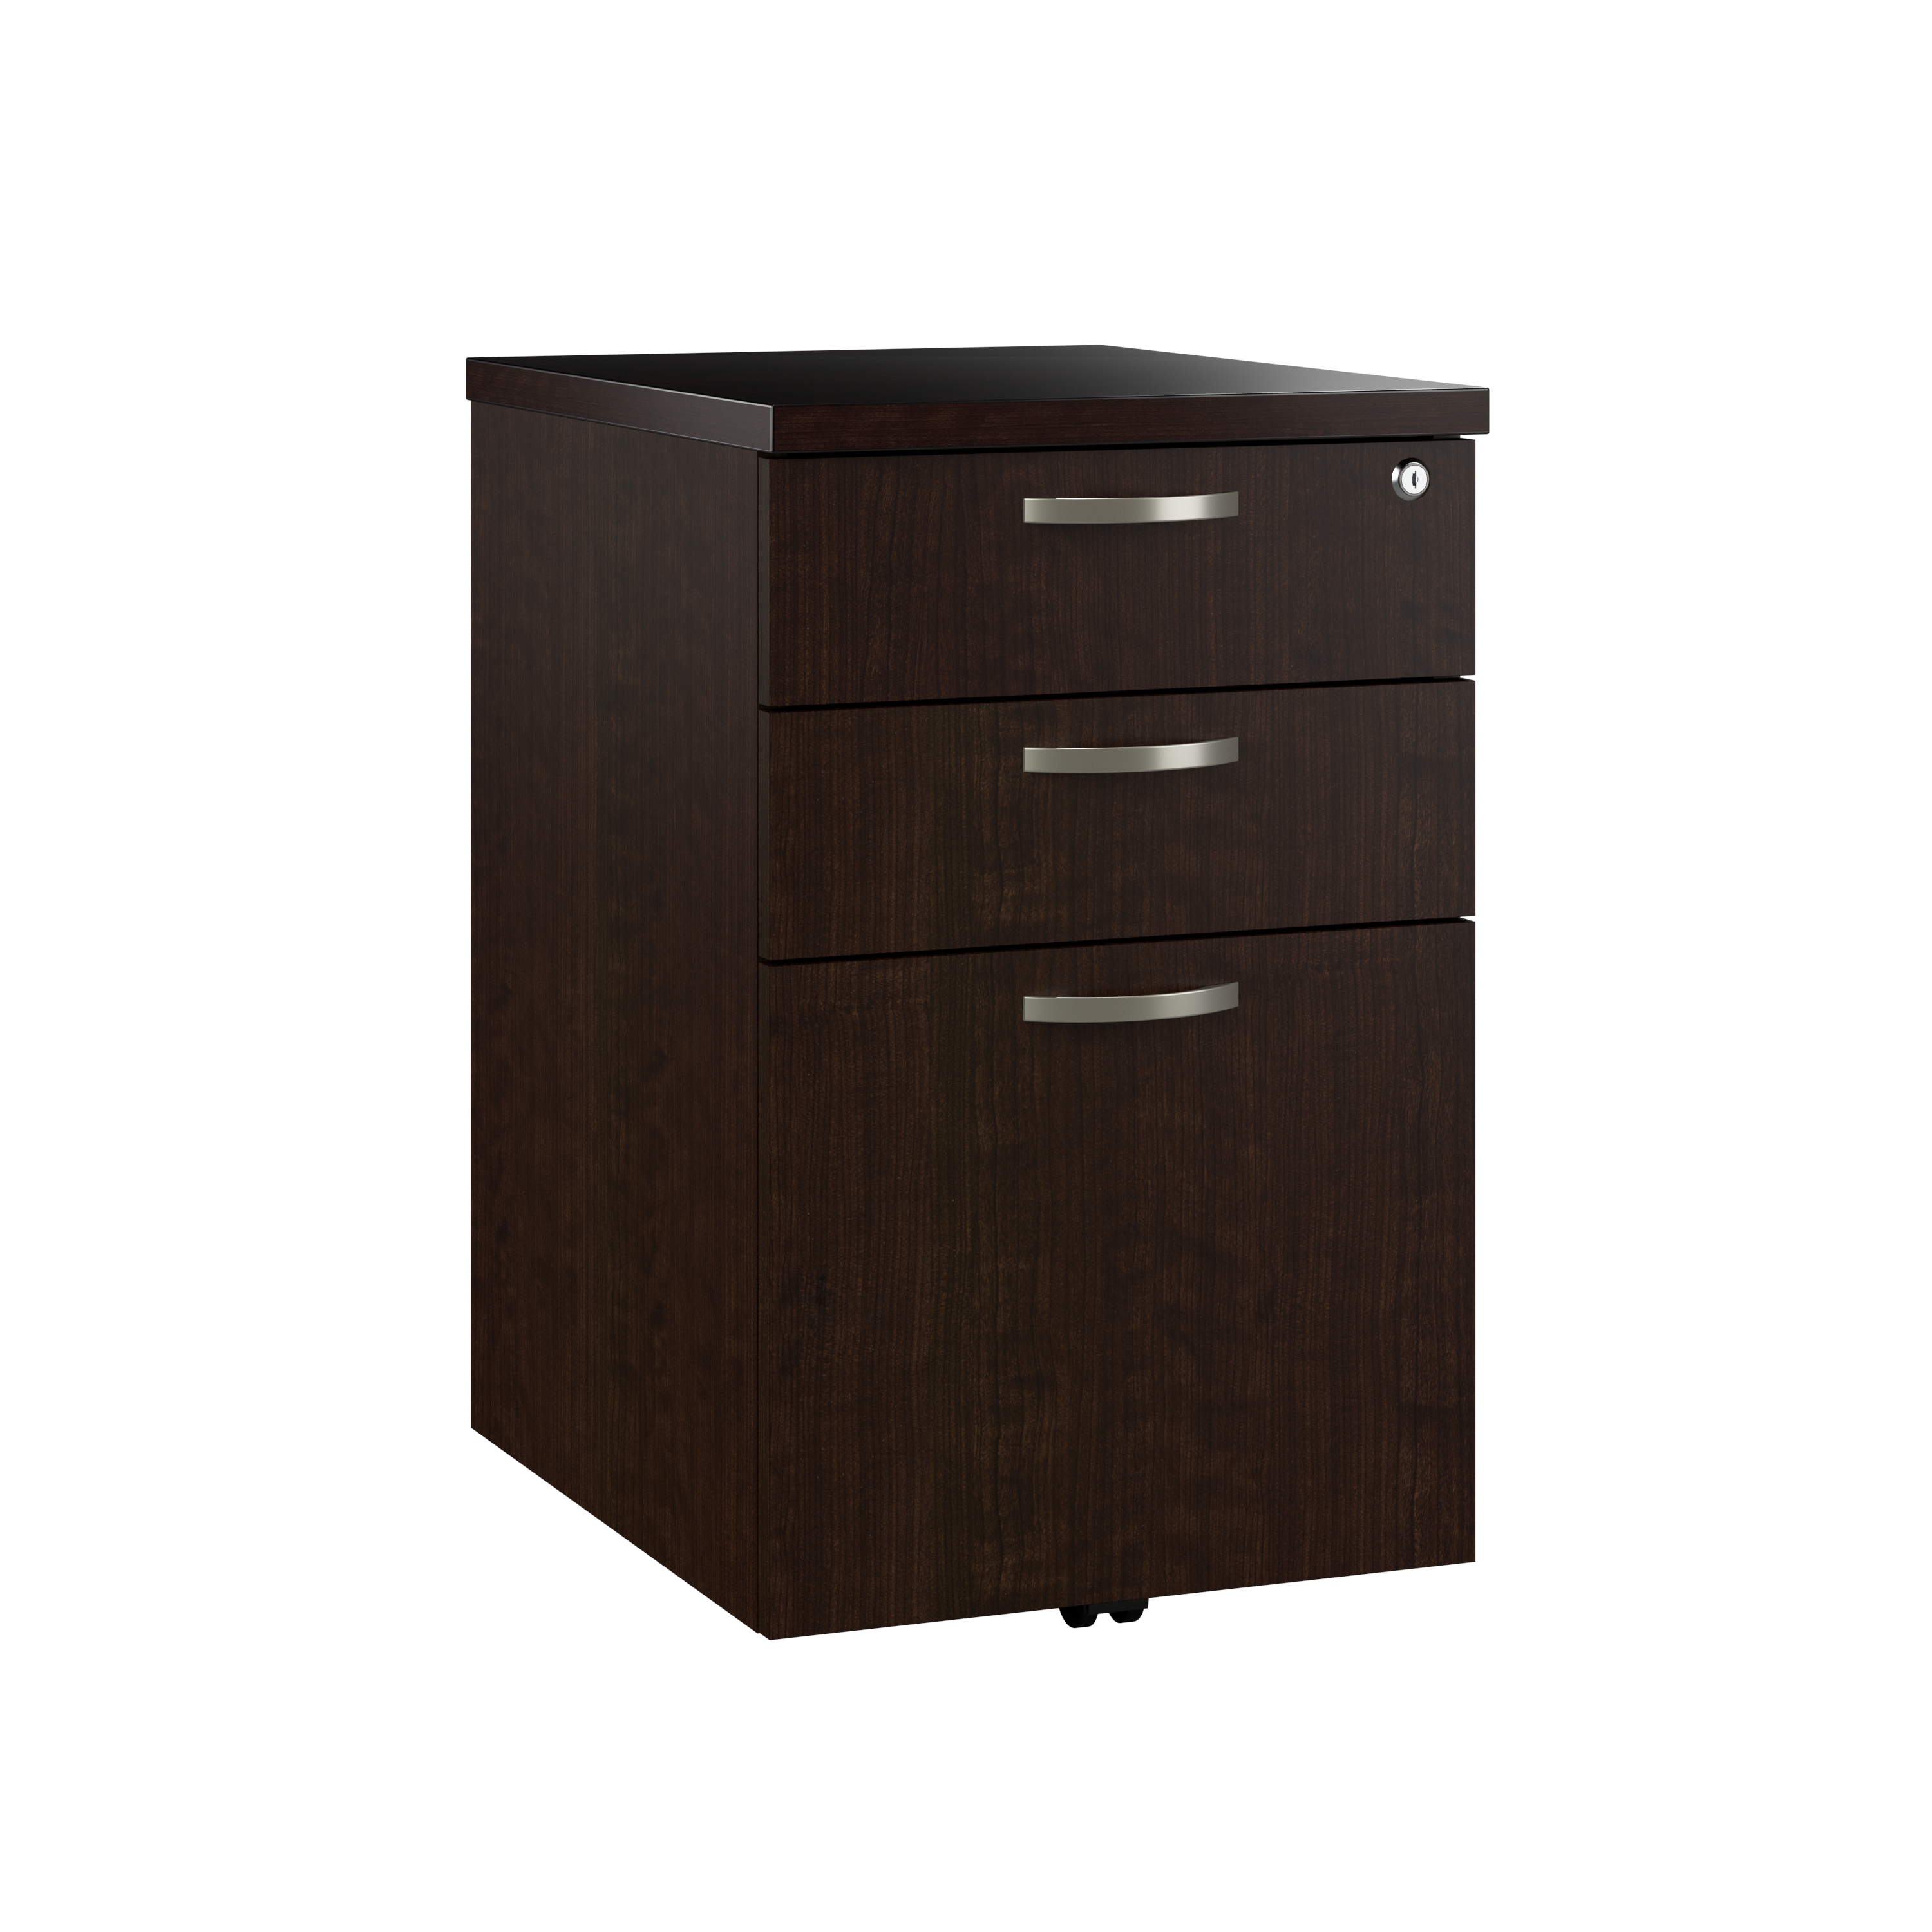 Shop Bush Business Furniture Easy Office 3 Drawer Mobile File Cabinet 02 EOF116MR-03 #color_mocha cherry